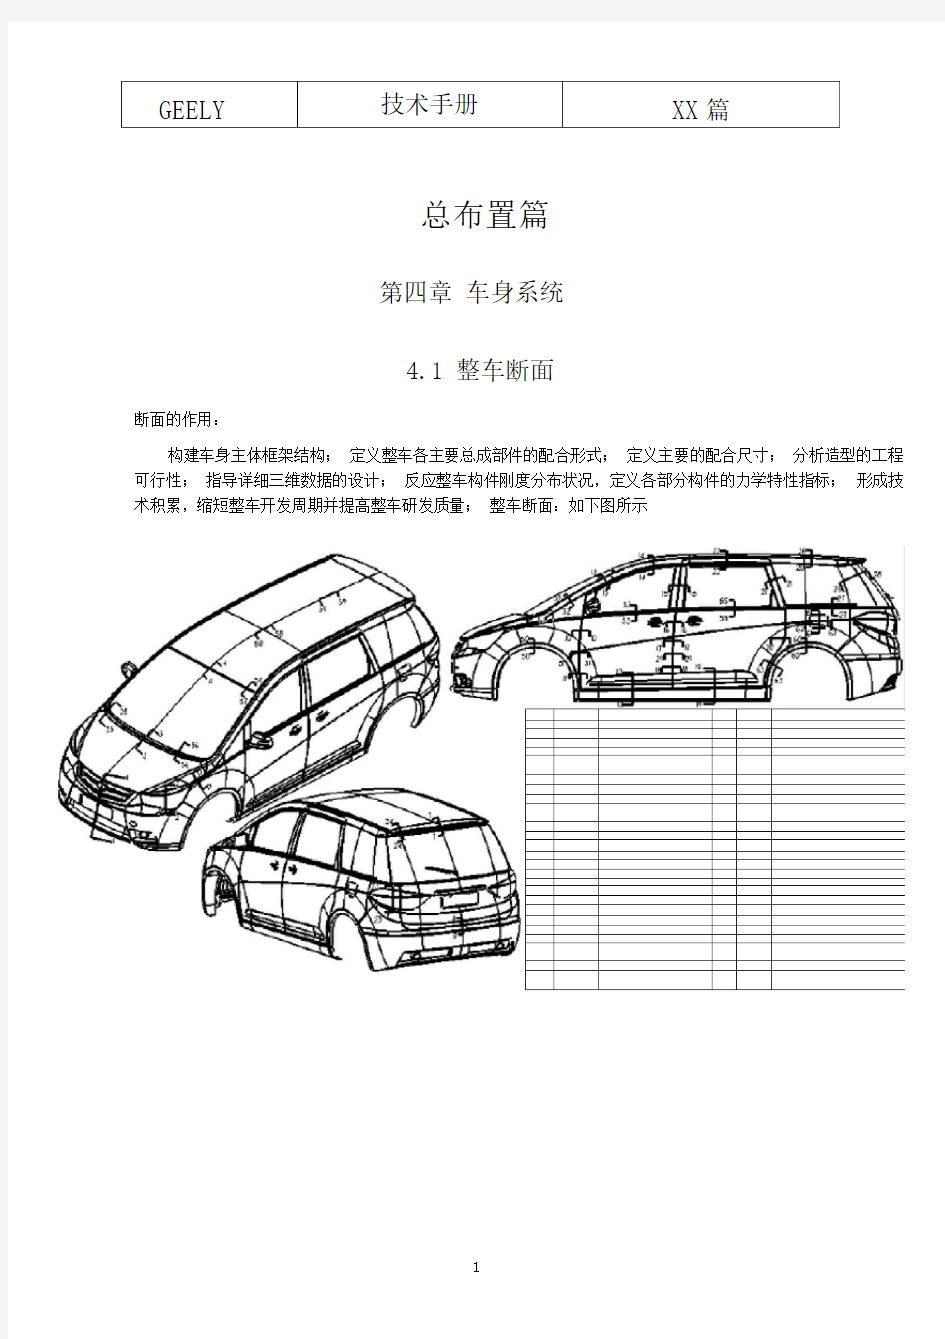 吉利整车部设计手册车身系统(20210218163815)